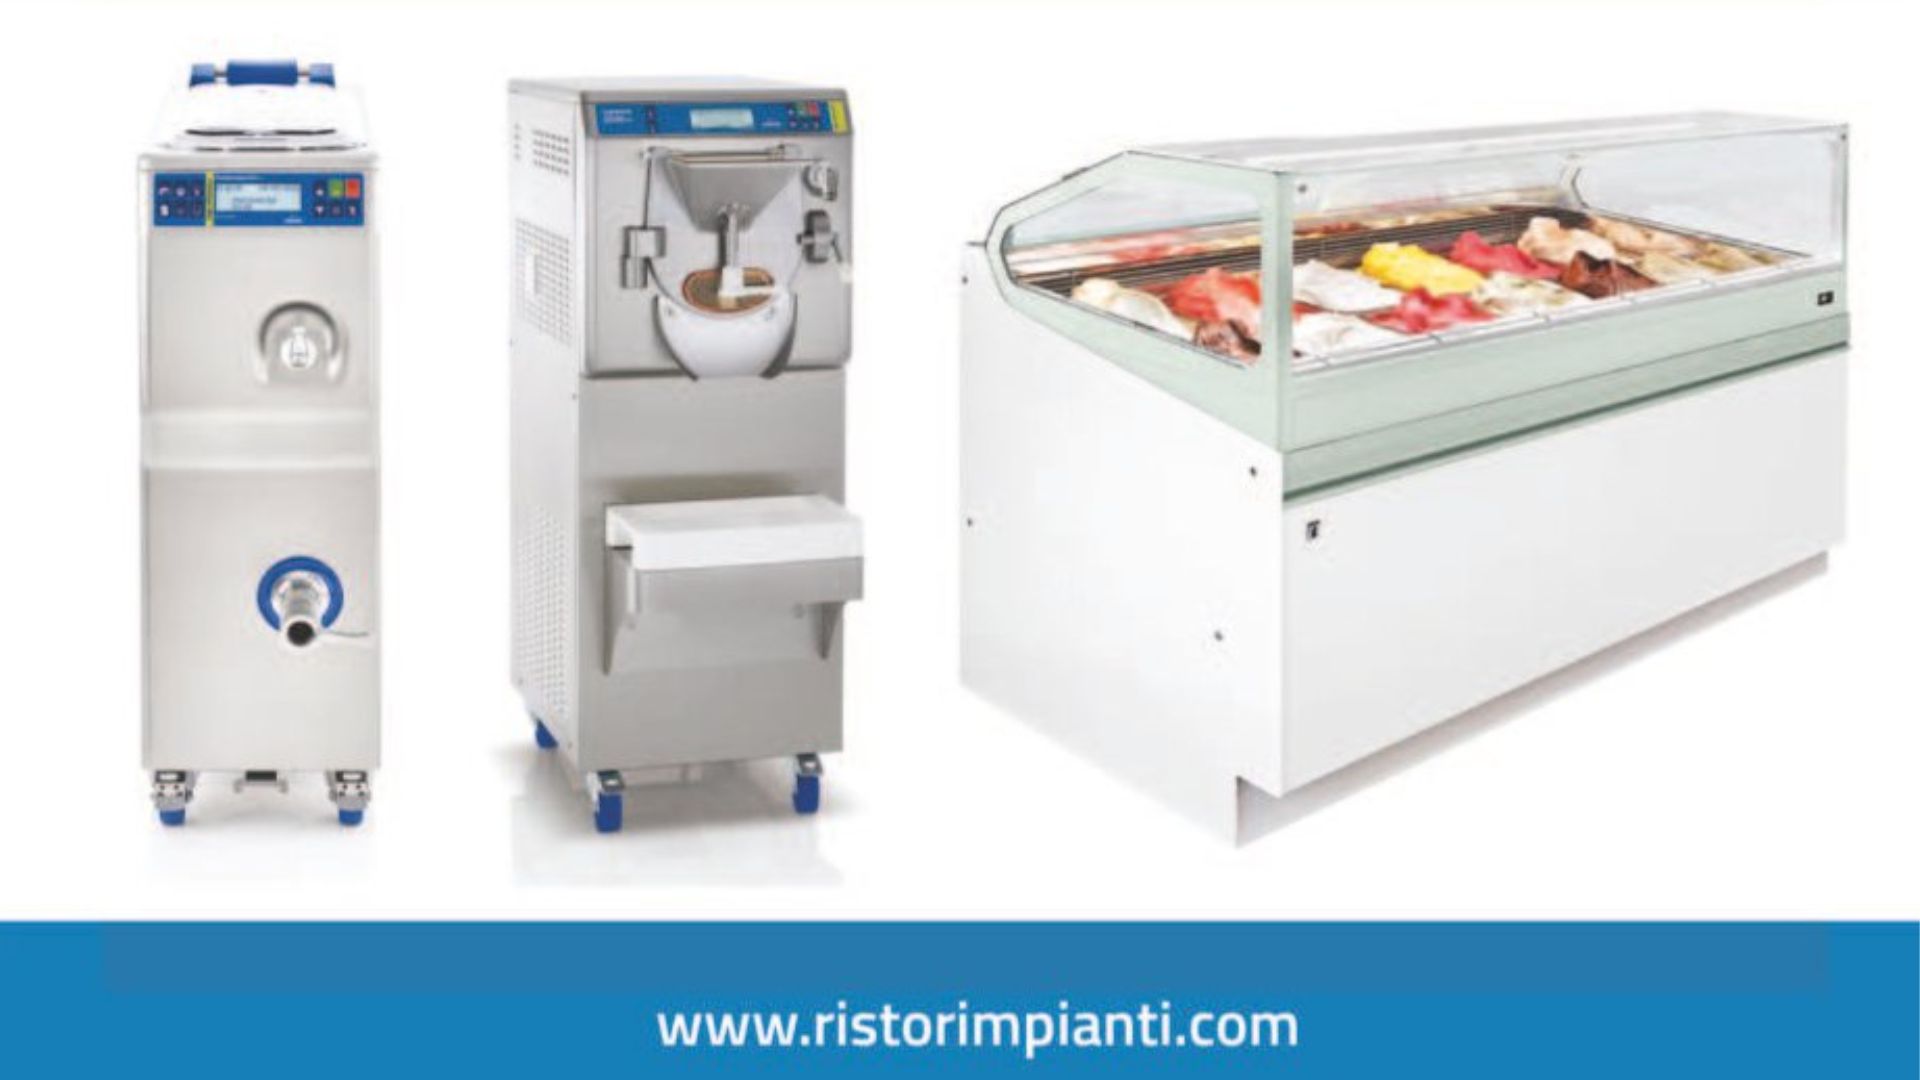 Featured image for “Ristor Impianti: il tuo partner di fiducia per la gelateria”